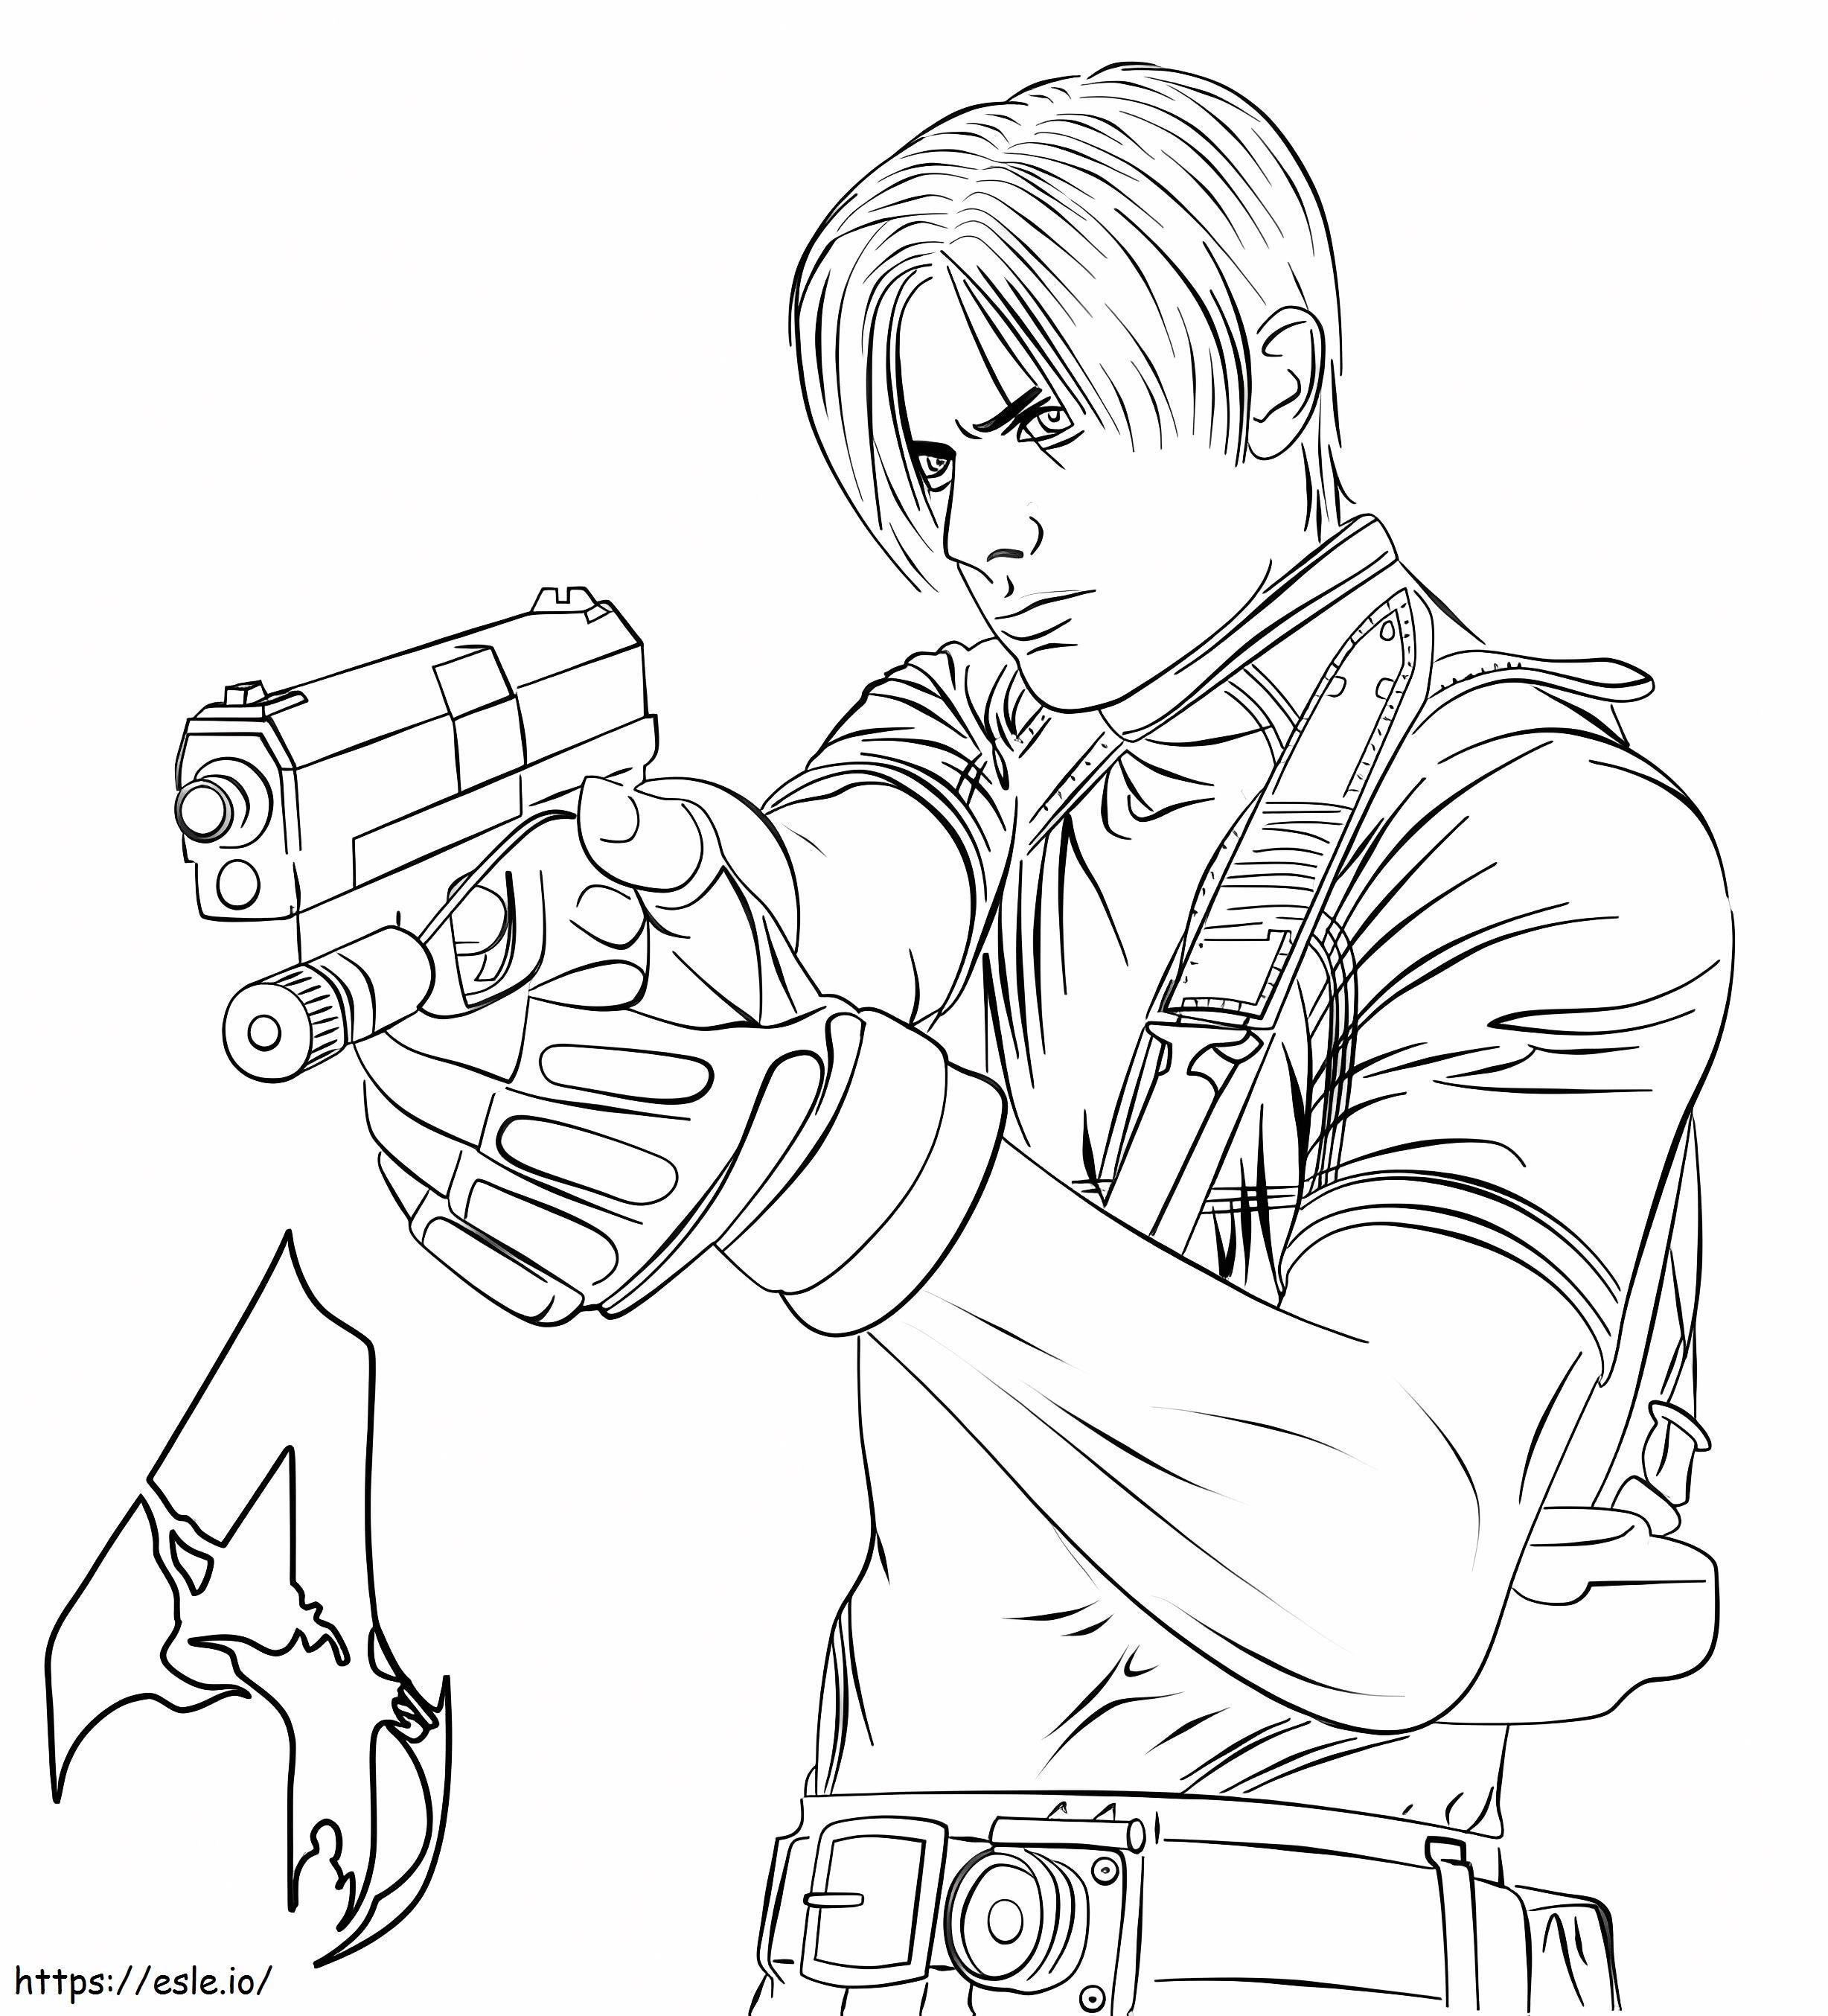 Leon a Resident Eviltől kifestő